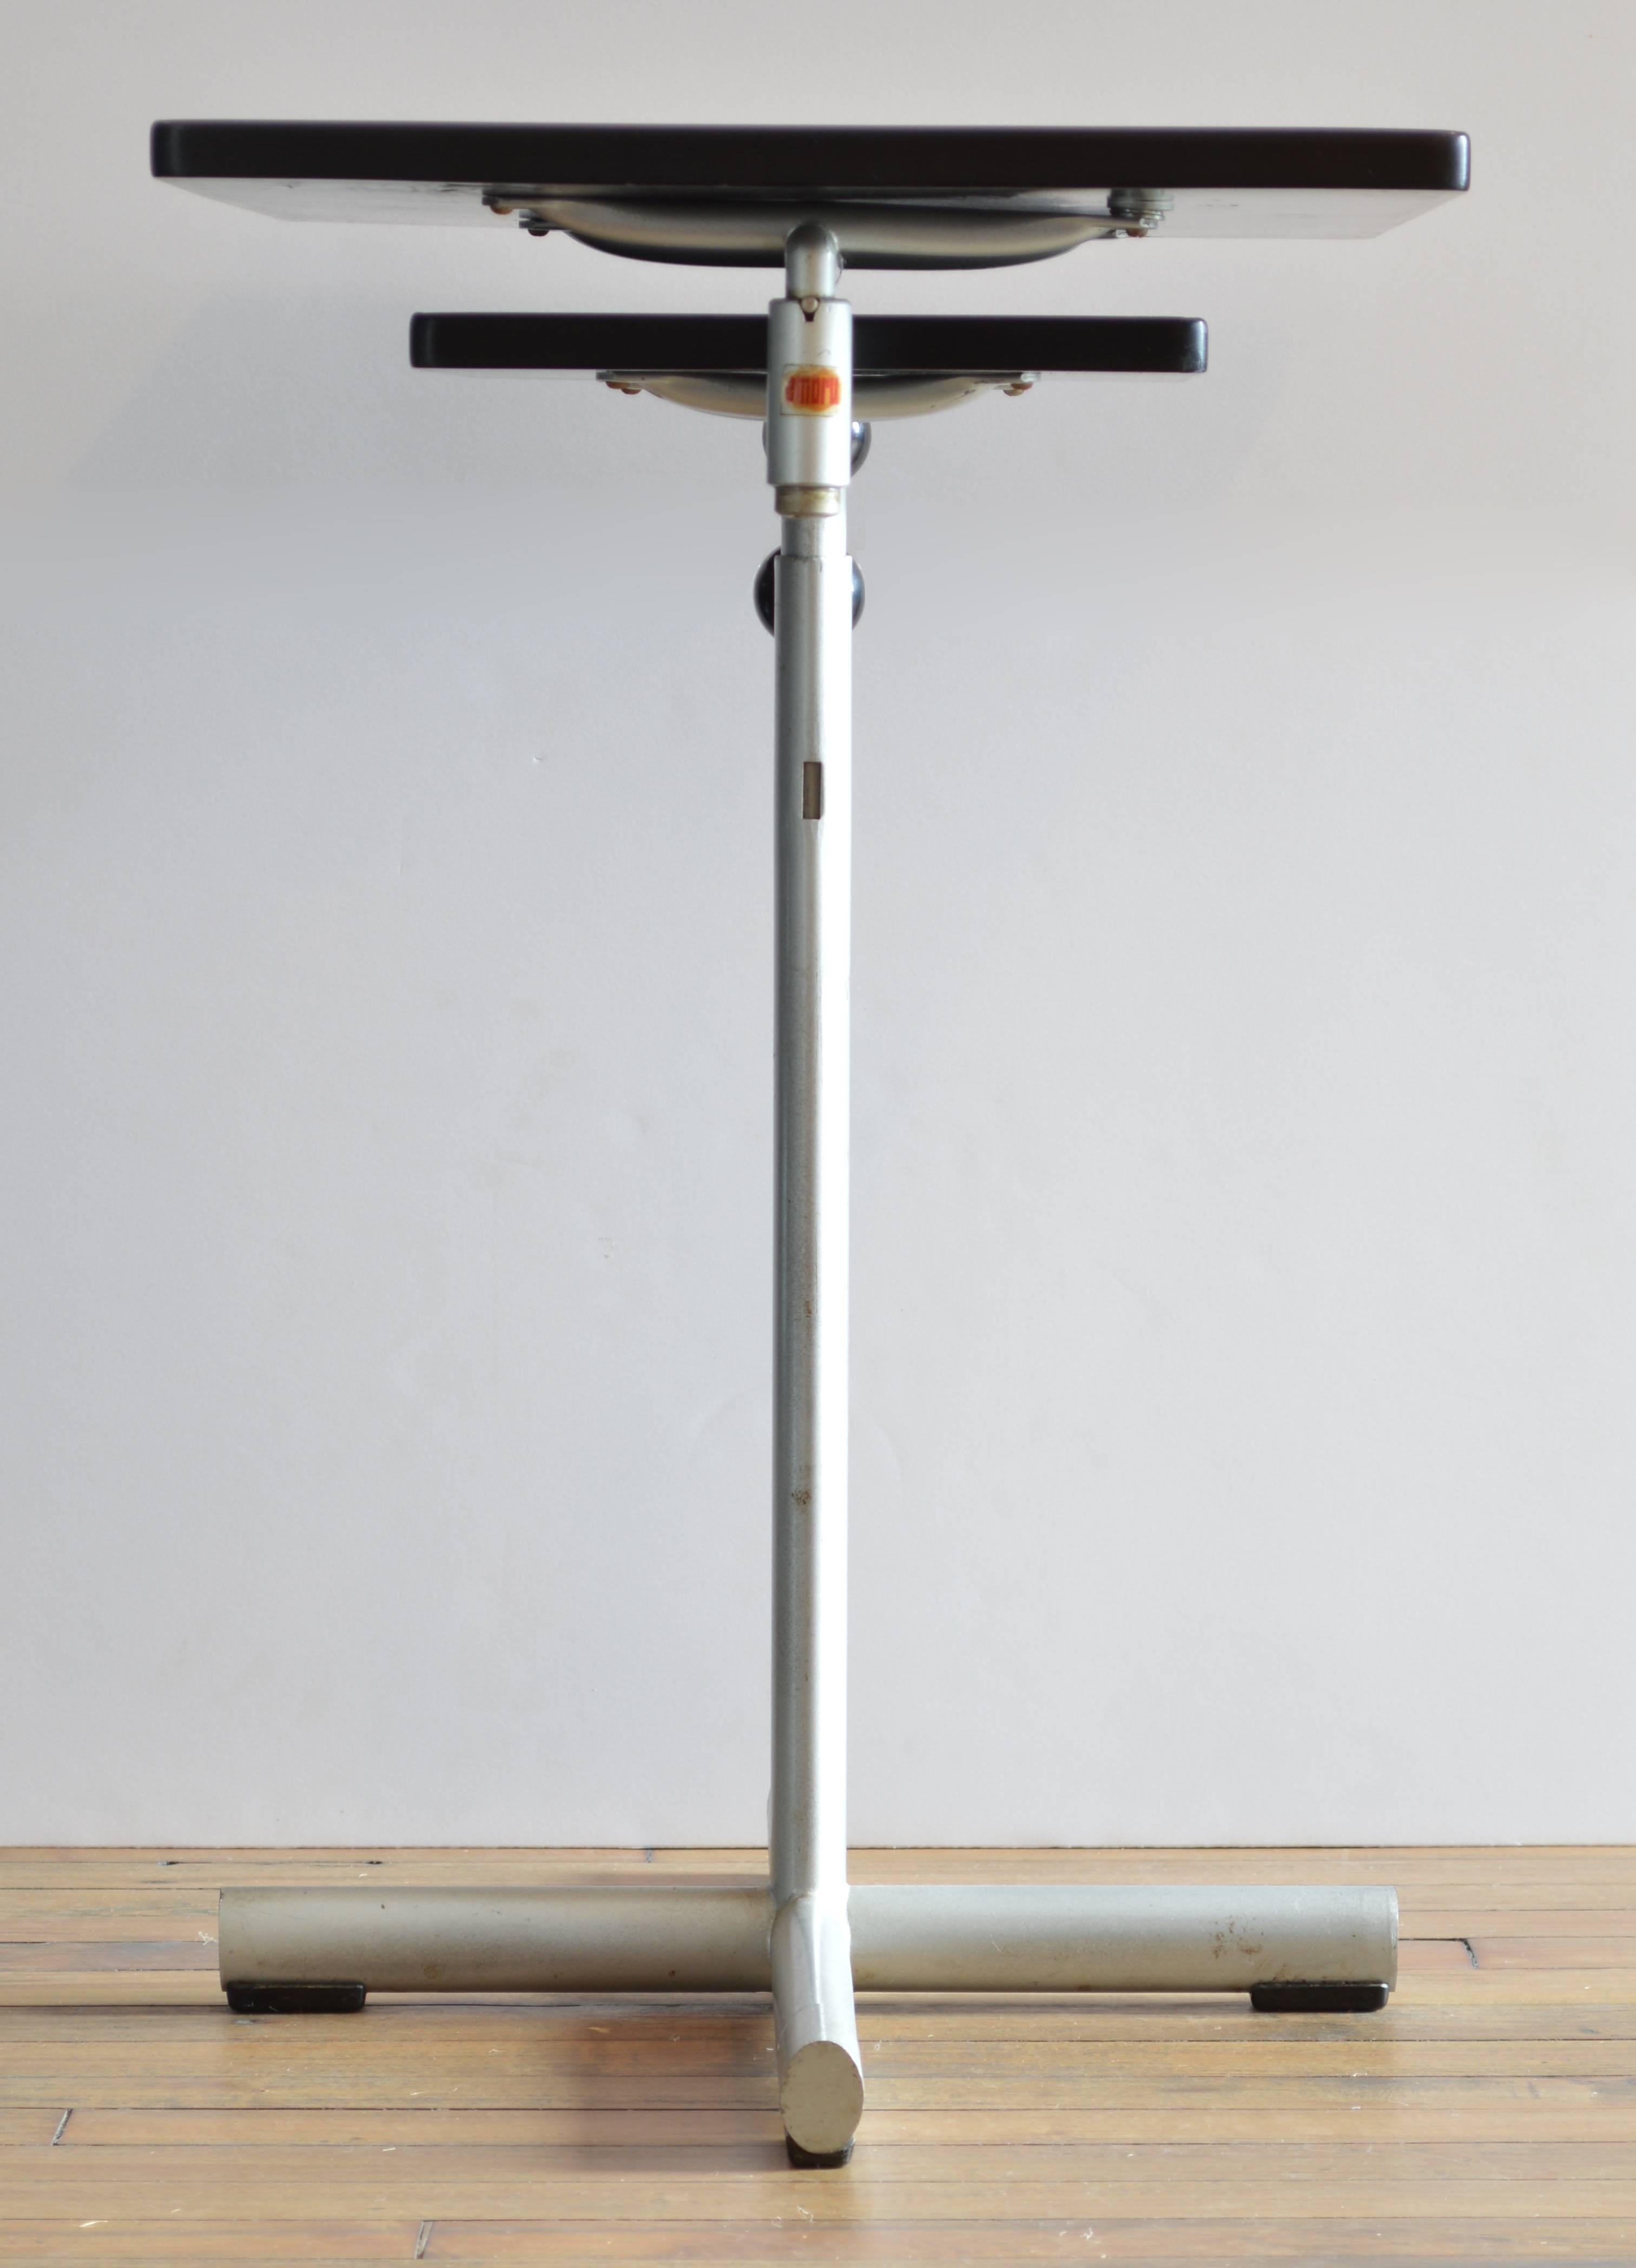 Adjustable work table designed by Swiss designer Werner Max Moser for Embru. Adjustable height, from 27